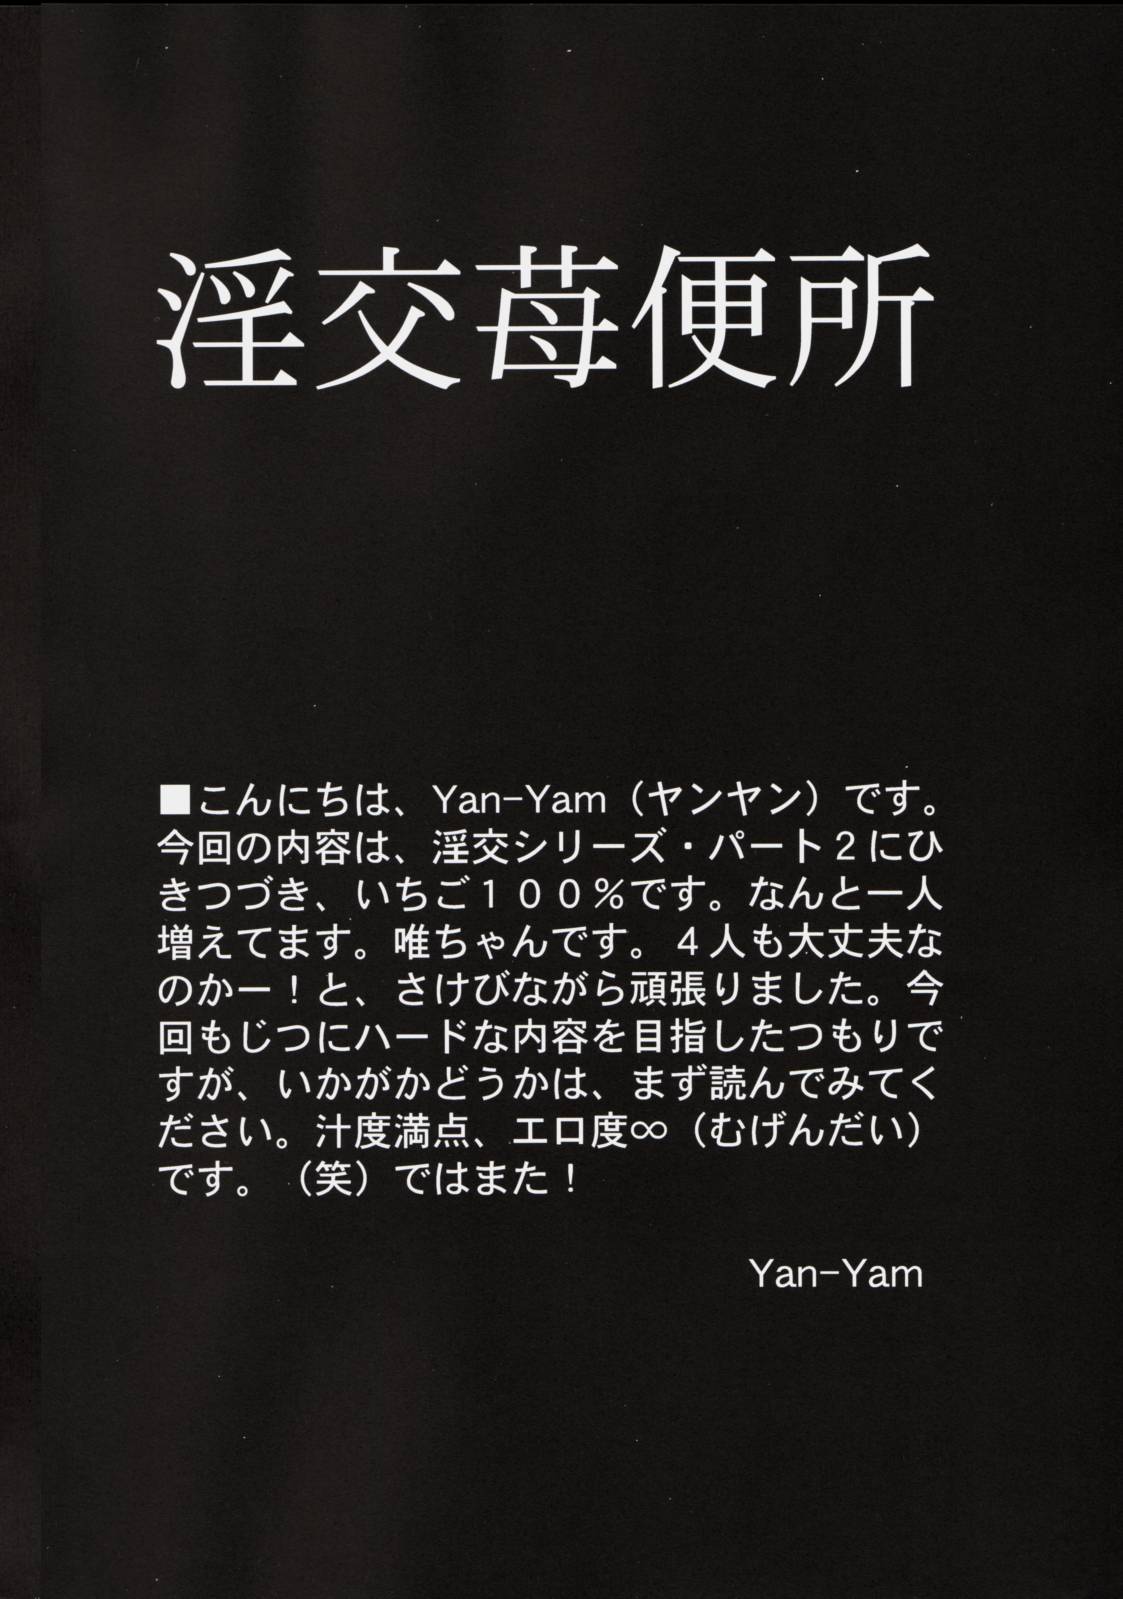 [Yan-Yam] 淫行苺便所 